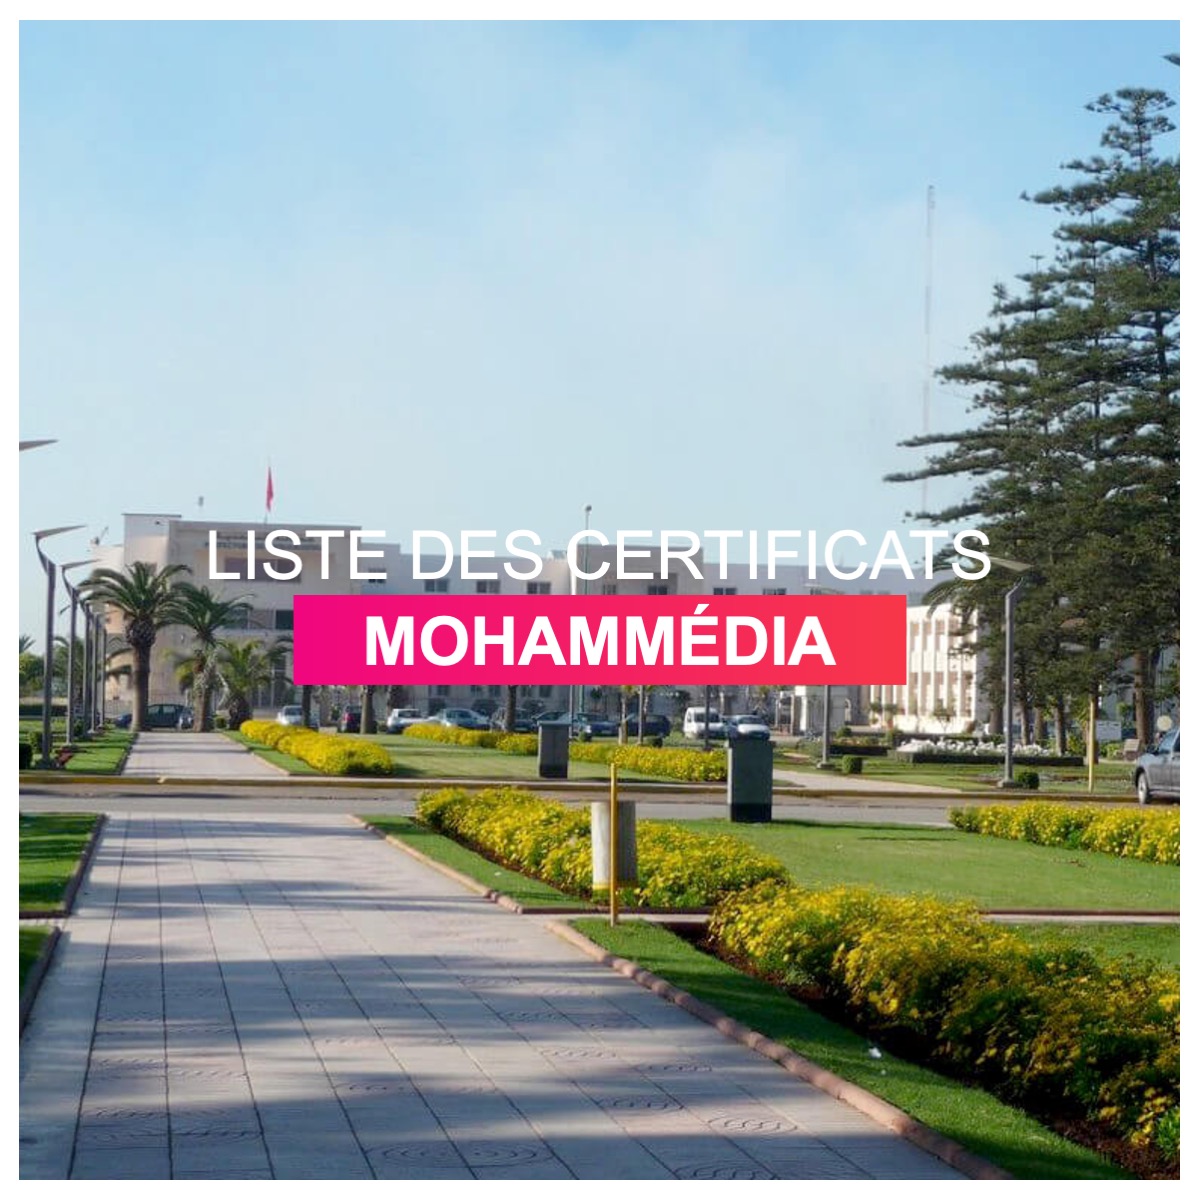 Liste des certificats Mohammedia l Dates-concours.ma